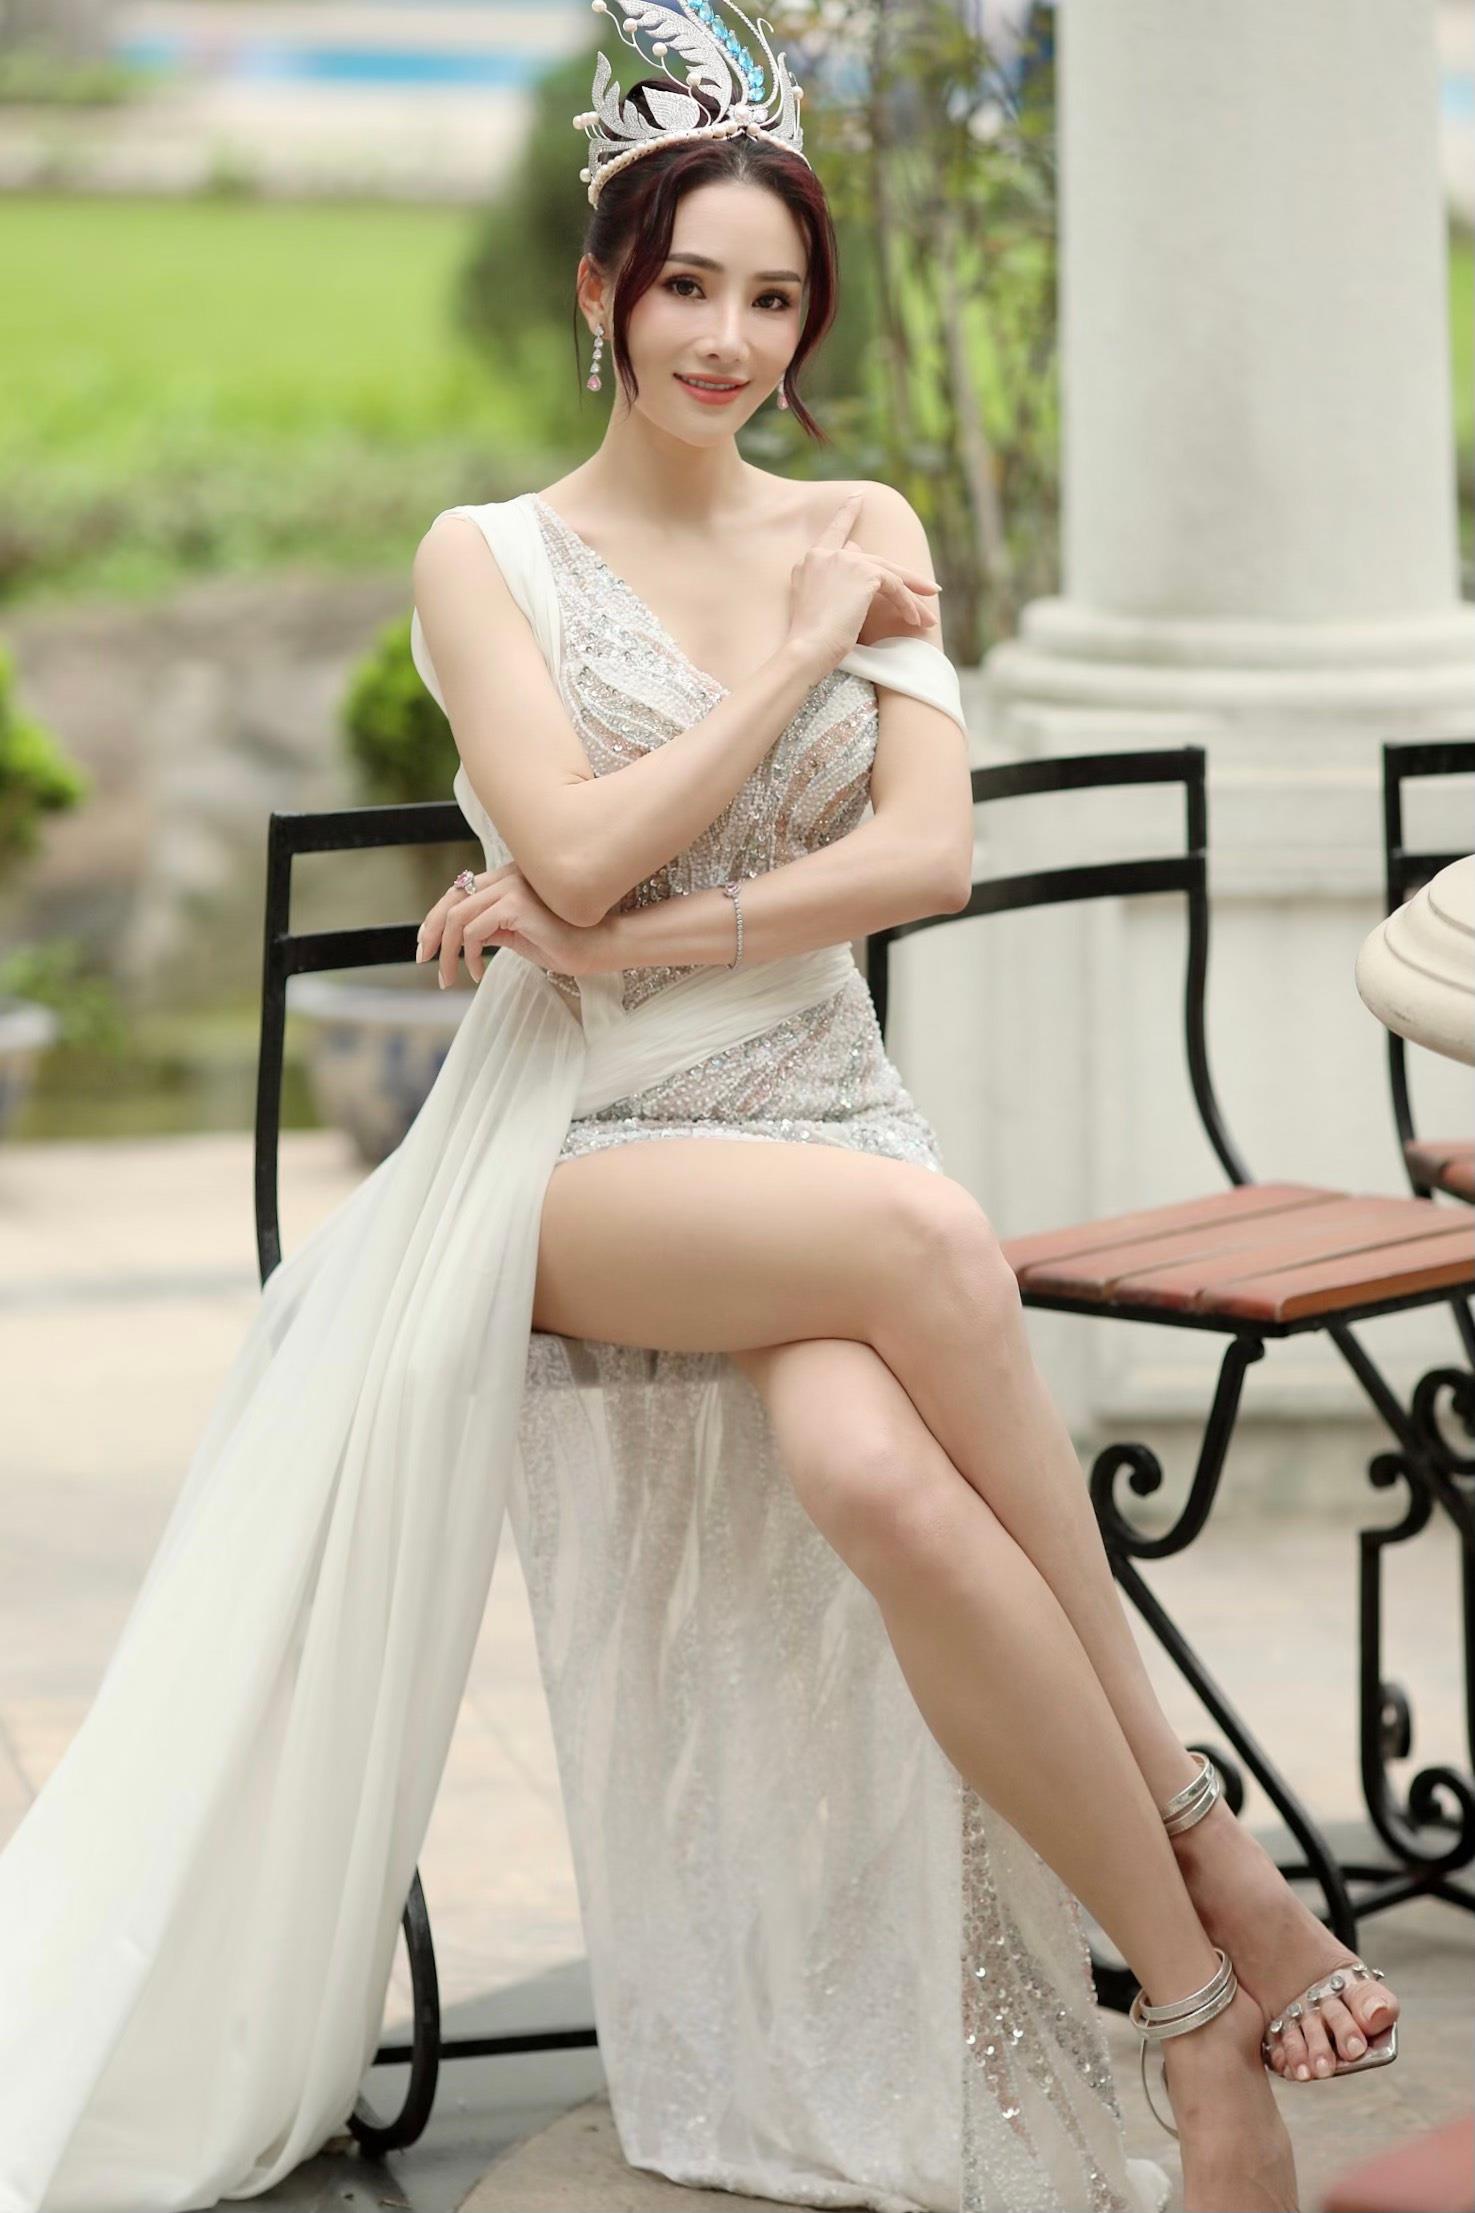 Hoa hậu Hoàng Thanh Loan: “Hoạt động thiện nguyện là nguồn năng lượng nuôi dưỡng tâm hồn tôi” - Ảnh 4.